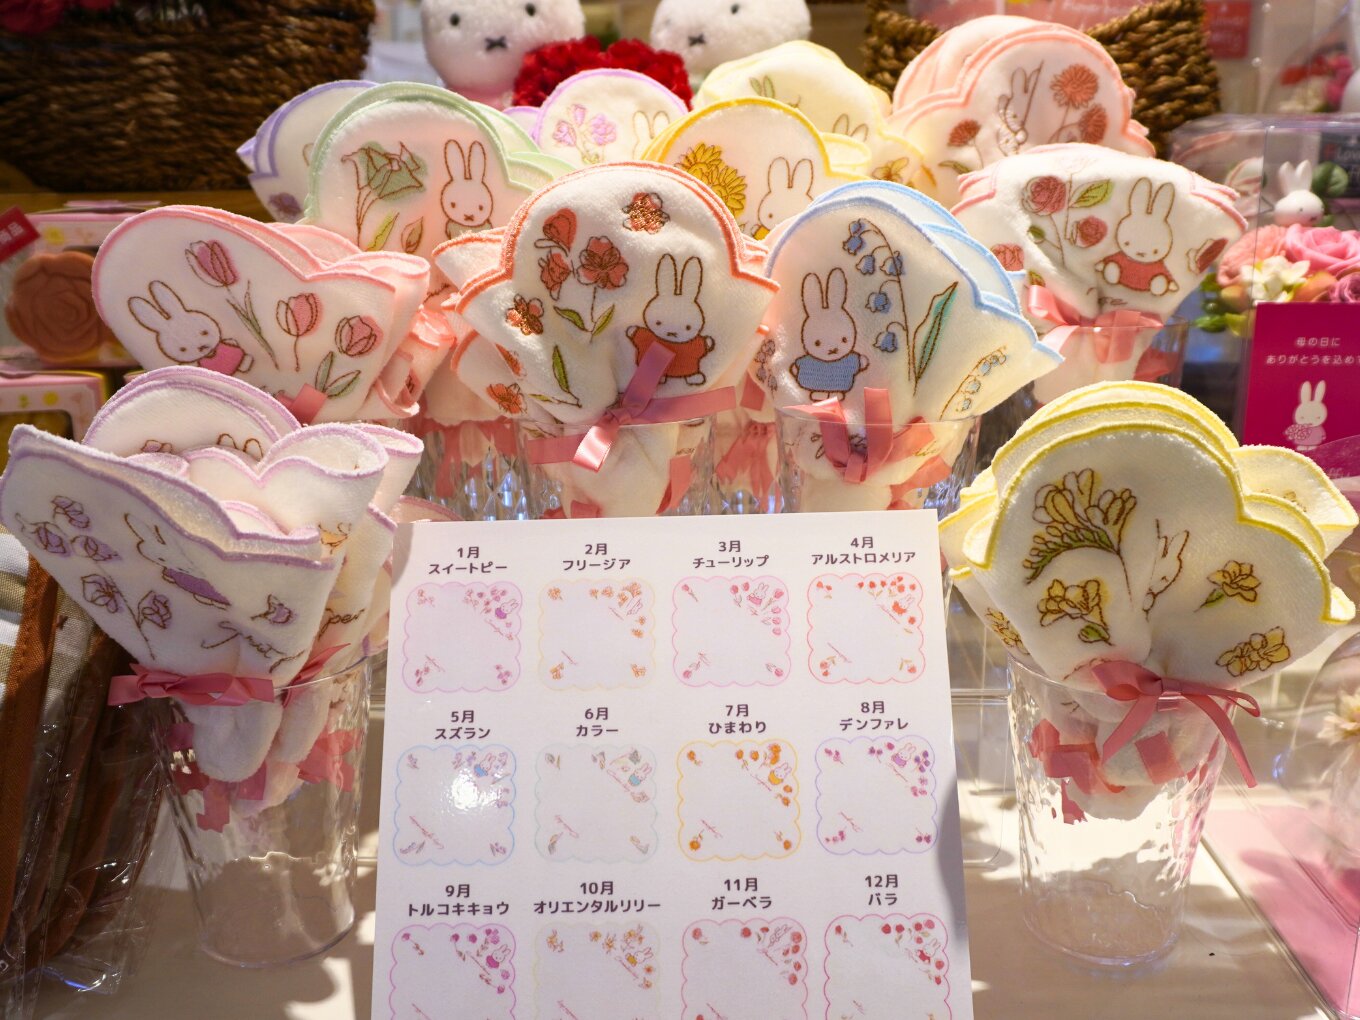 Flower Miffy バースデーフラワーミニタオル（1,320円）。ブーケのようなハンカチは誕生月ごとに異なる花がデザインされ、贈りたい人に合わせて選べる。